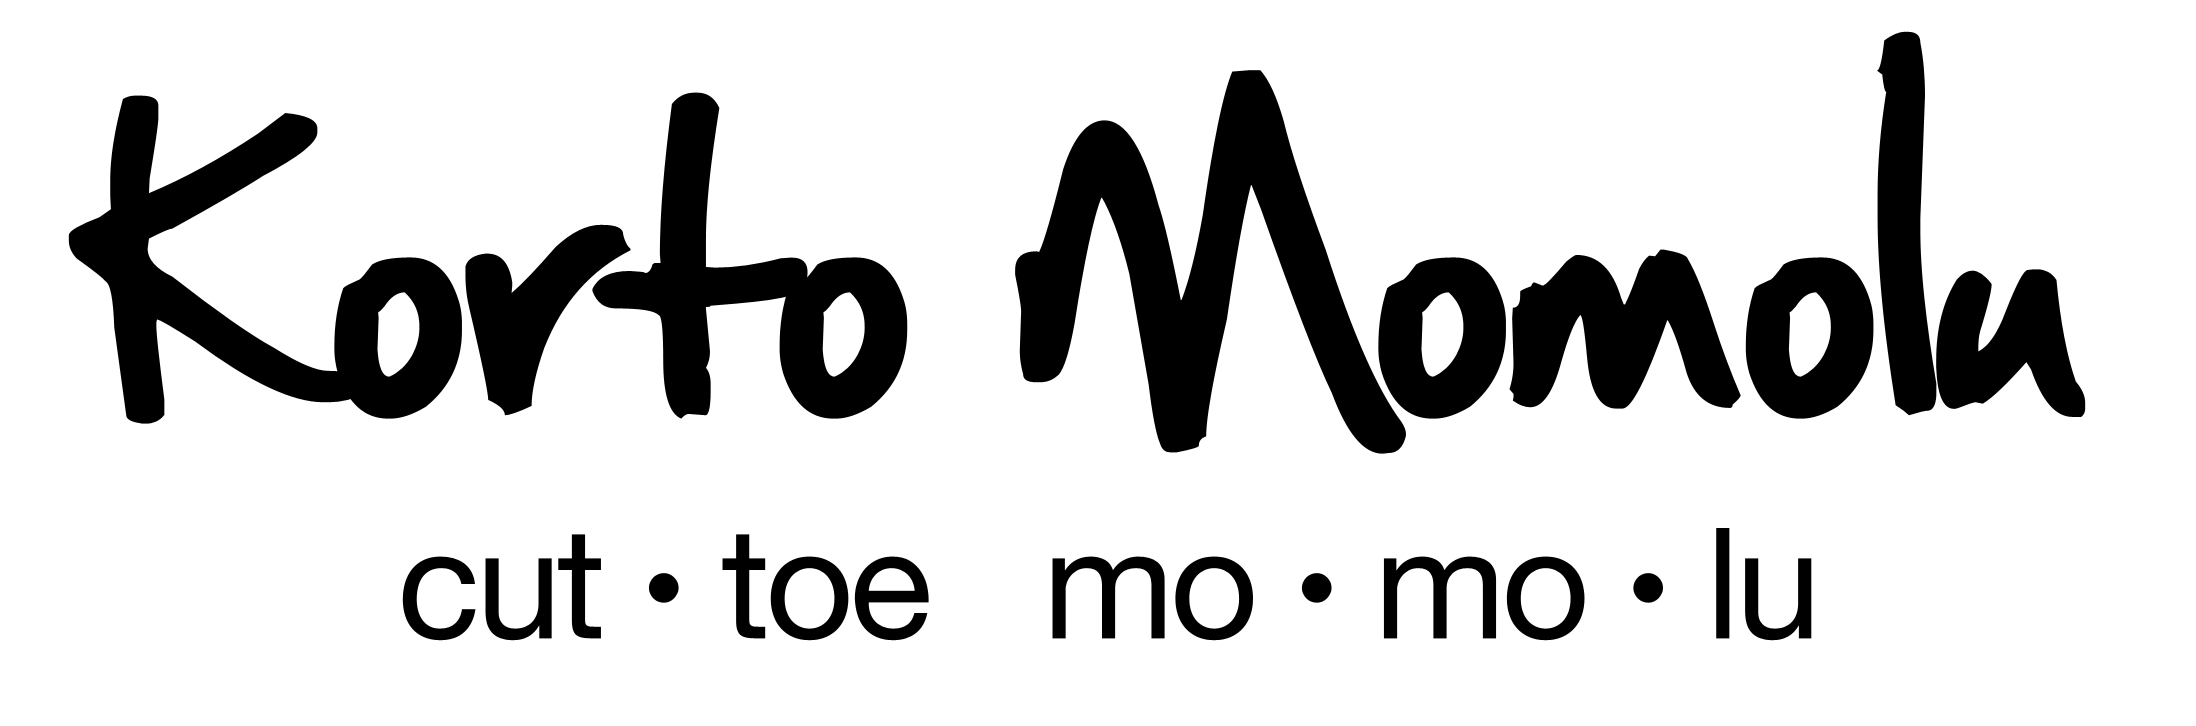 Korto Momolu logo